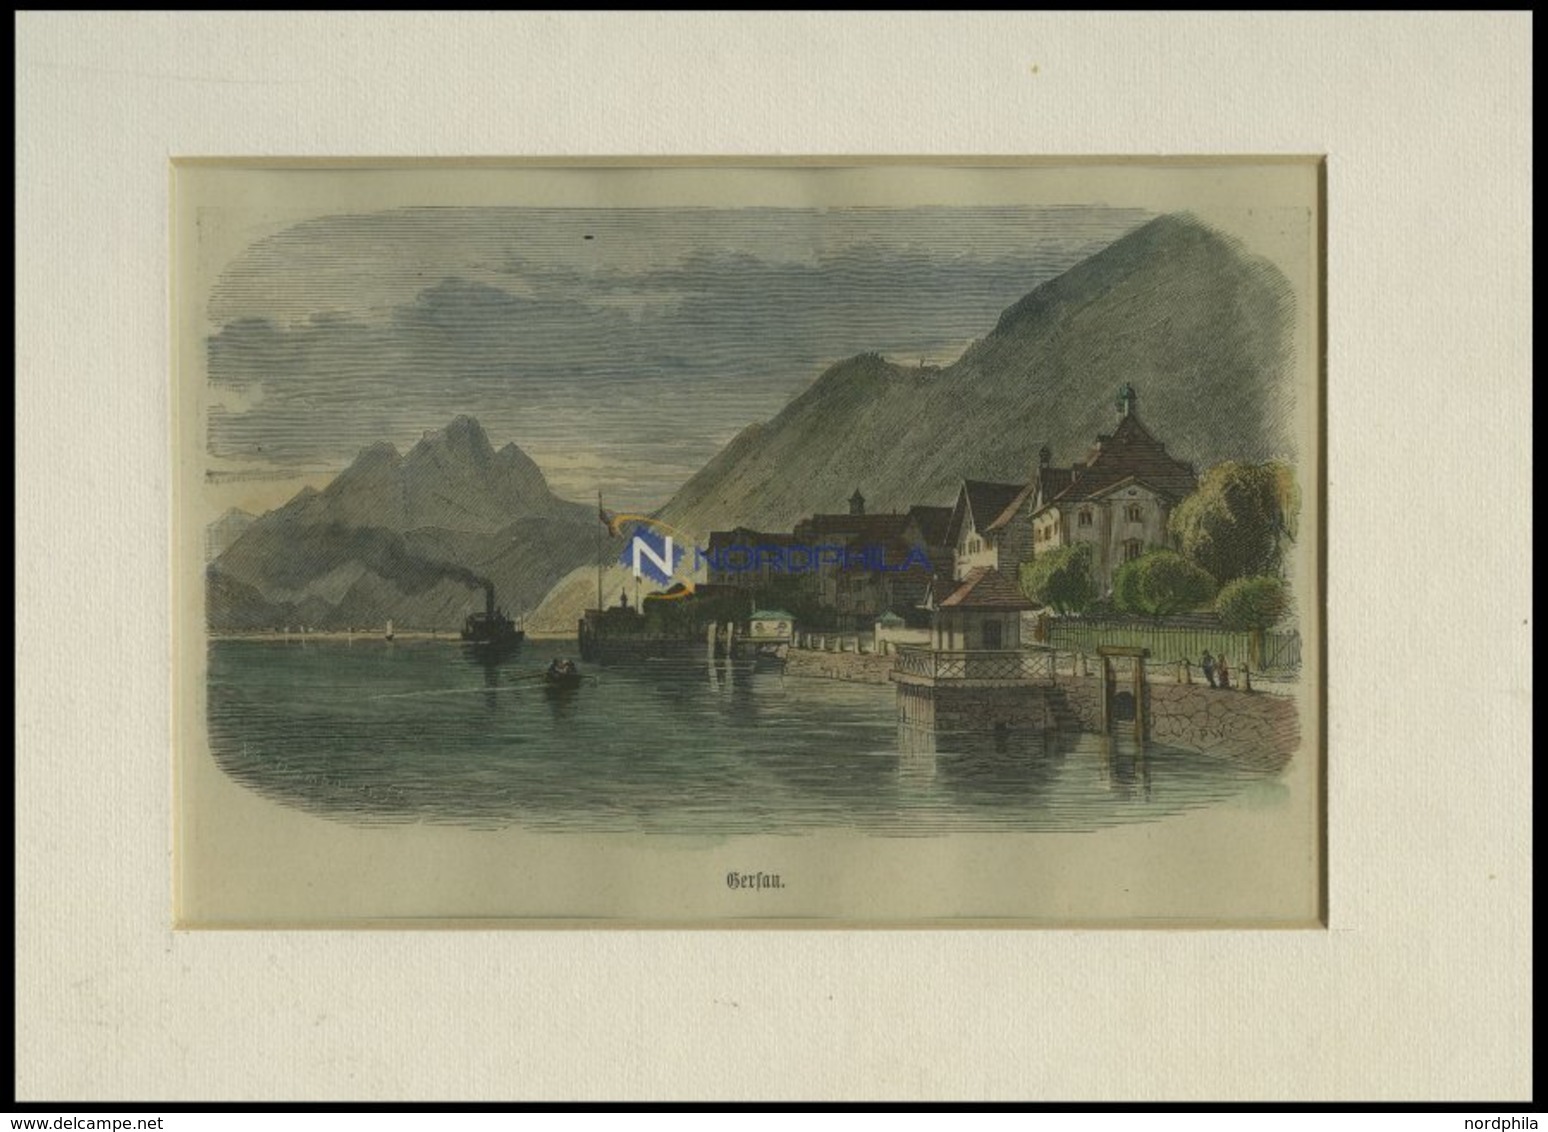 GERSAU, Gesamtansicht, Kolorierter Holzstich Um 1880 - Lithografieën